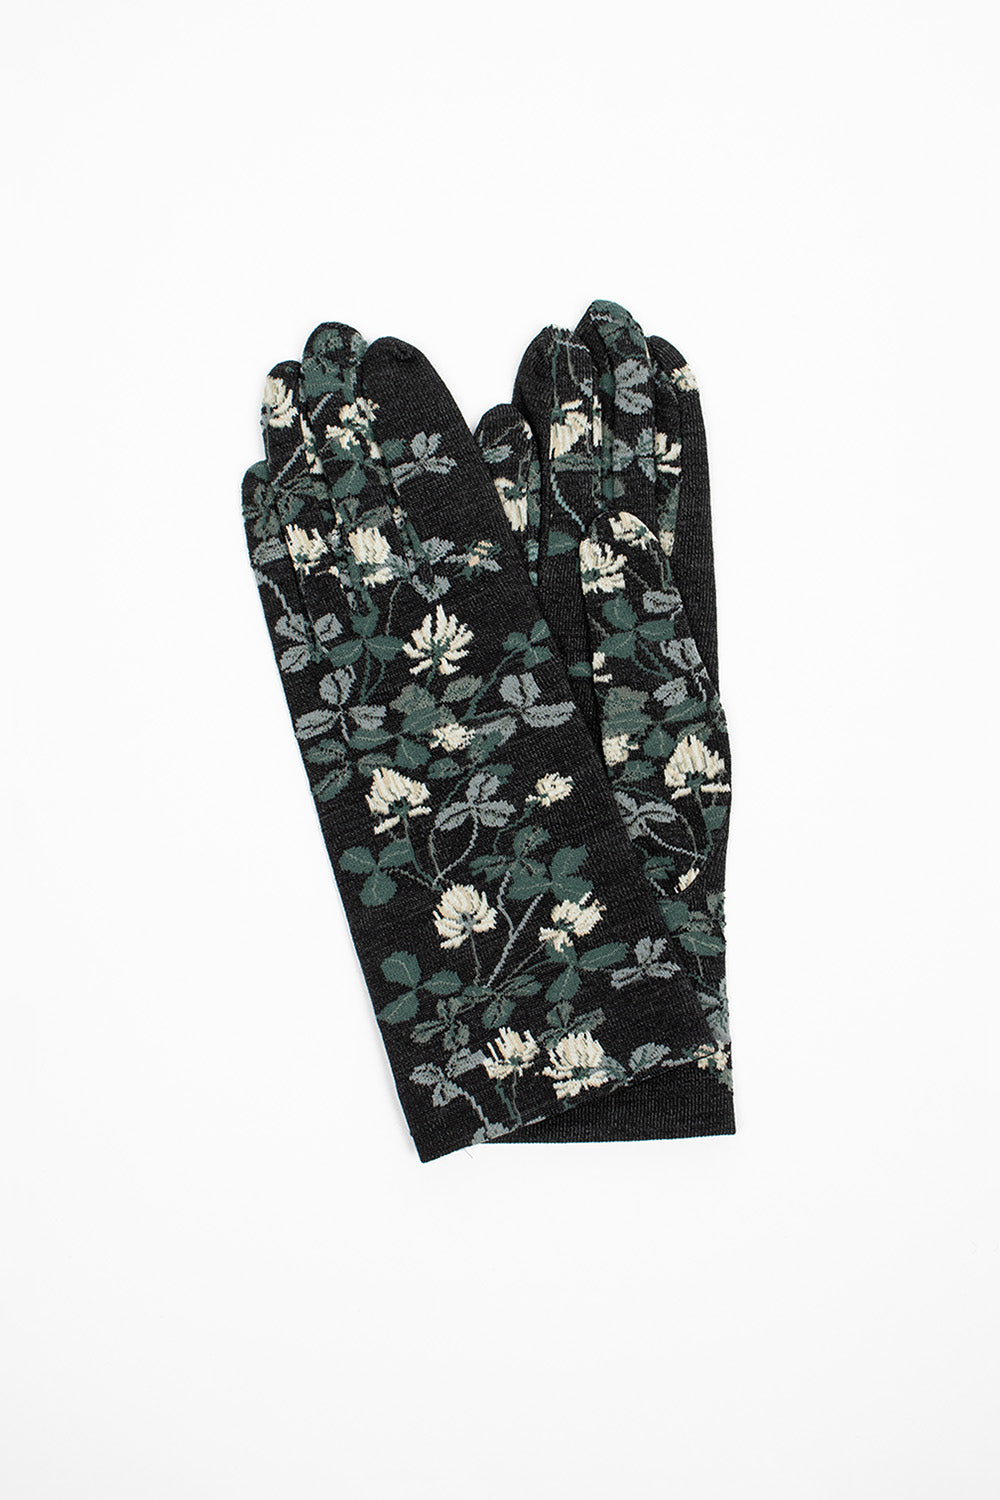 NG1-778 Gloves Black Floral